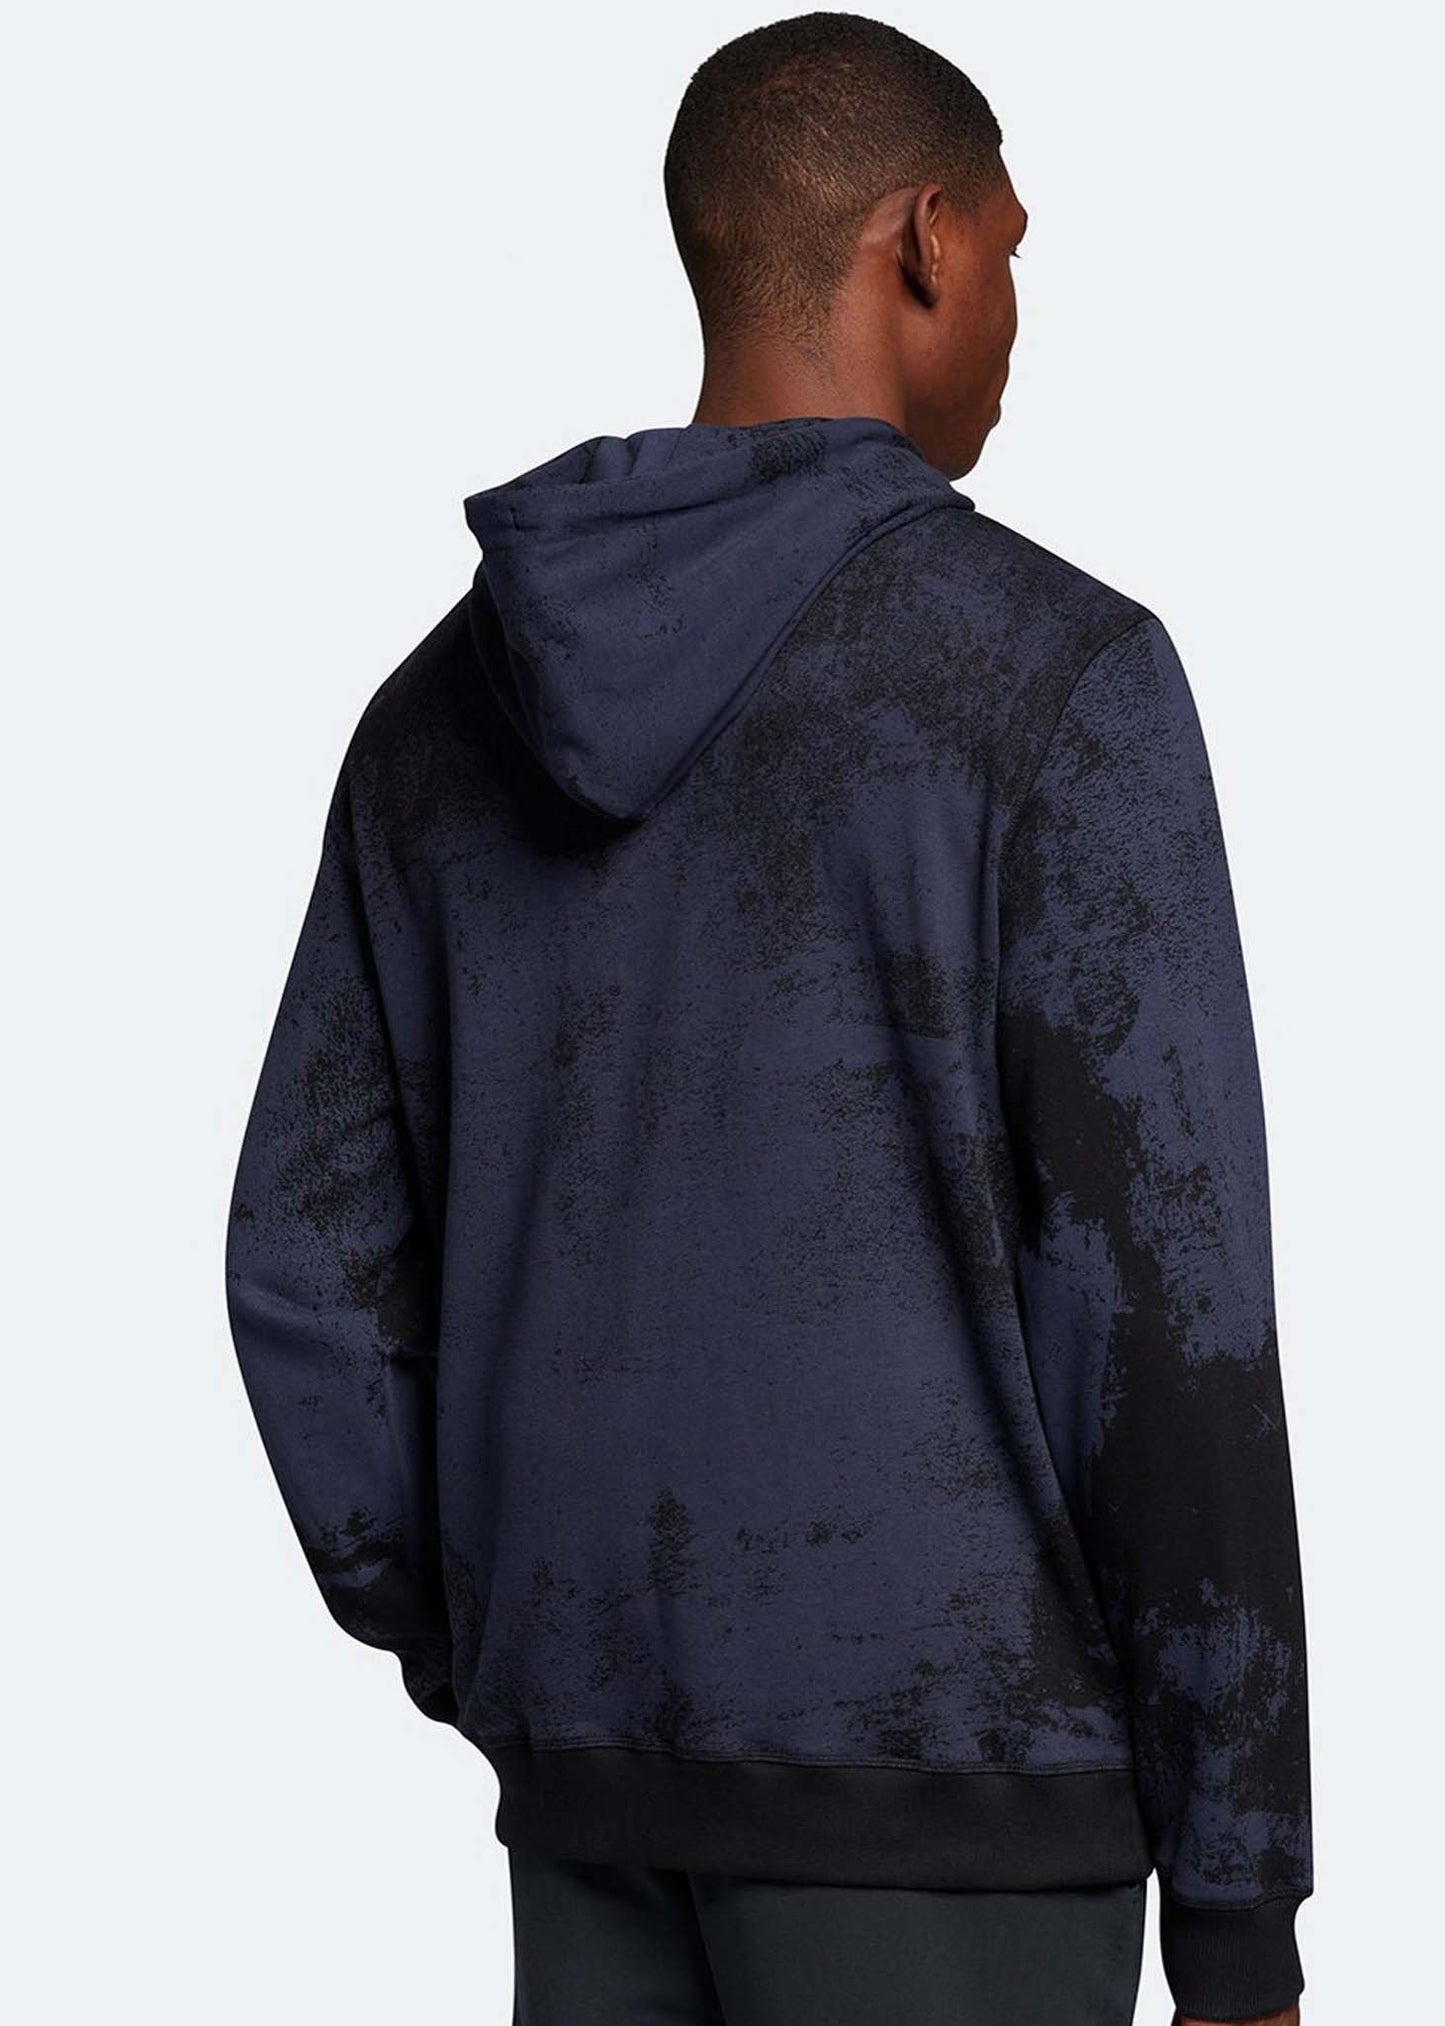 Erosion print hoodie - navy